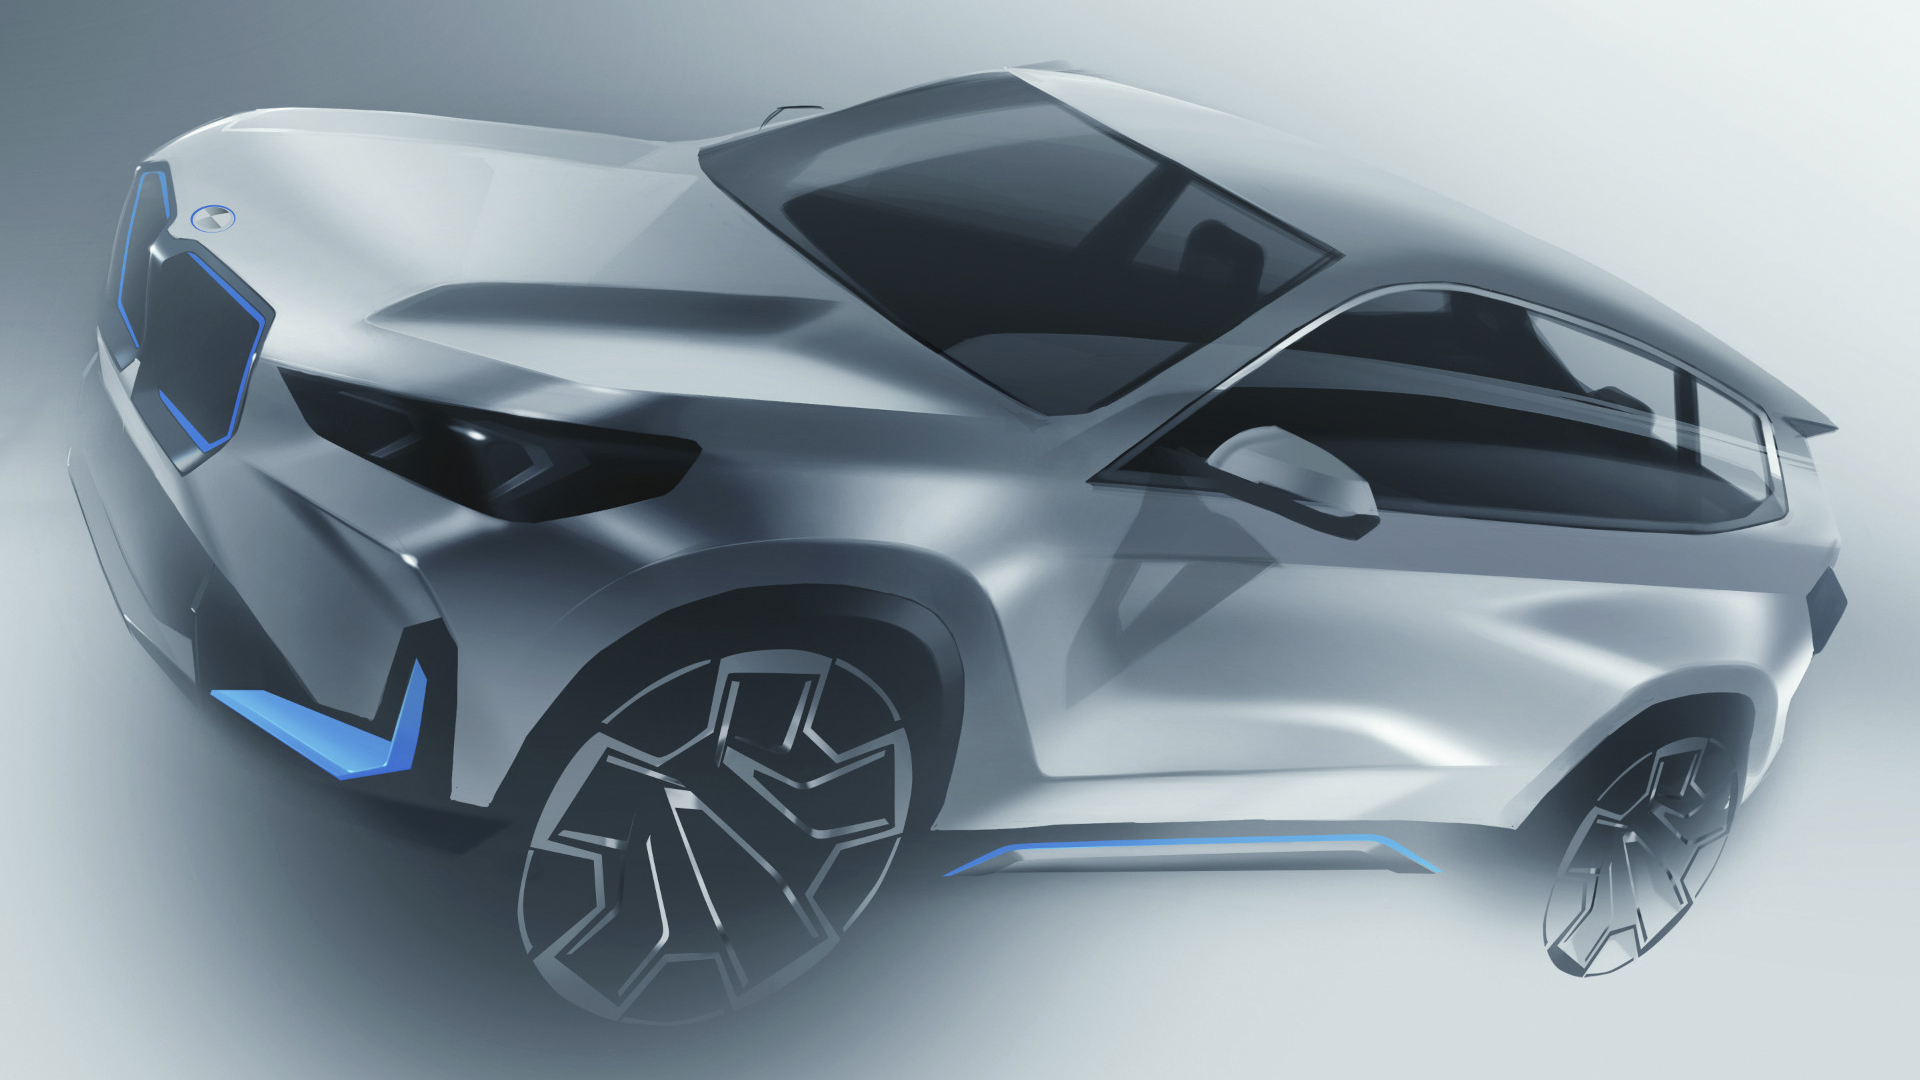 La plataforma permitirá que se construyan sobre sí, desde un BMW Serie 2 hasta un X7 en versión eléctrica o híbrida enchufable